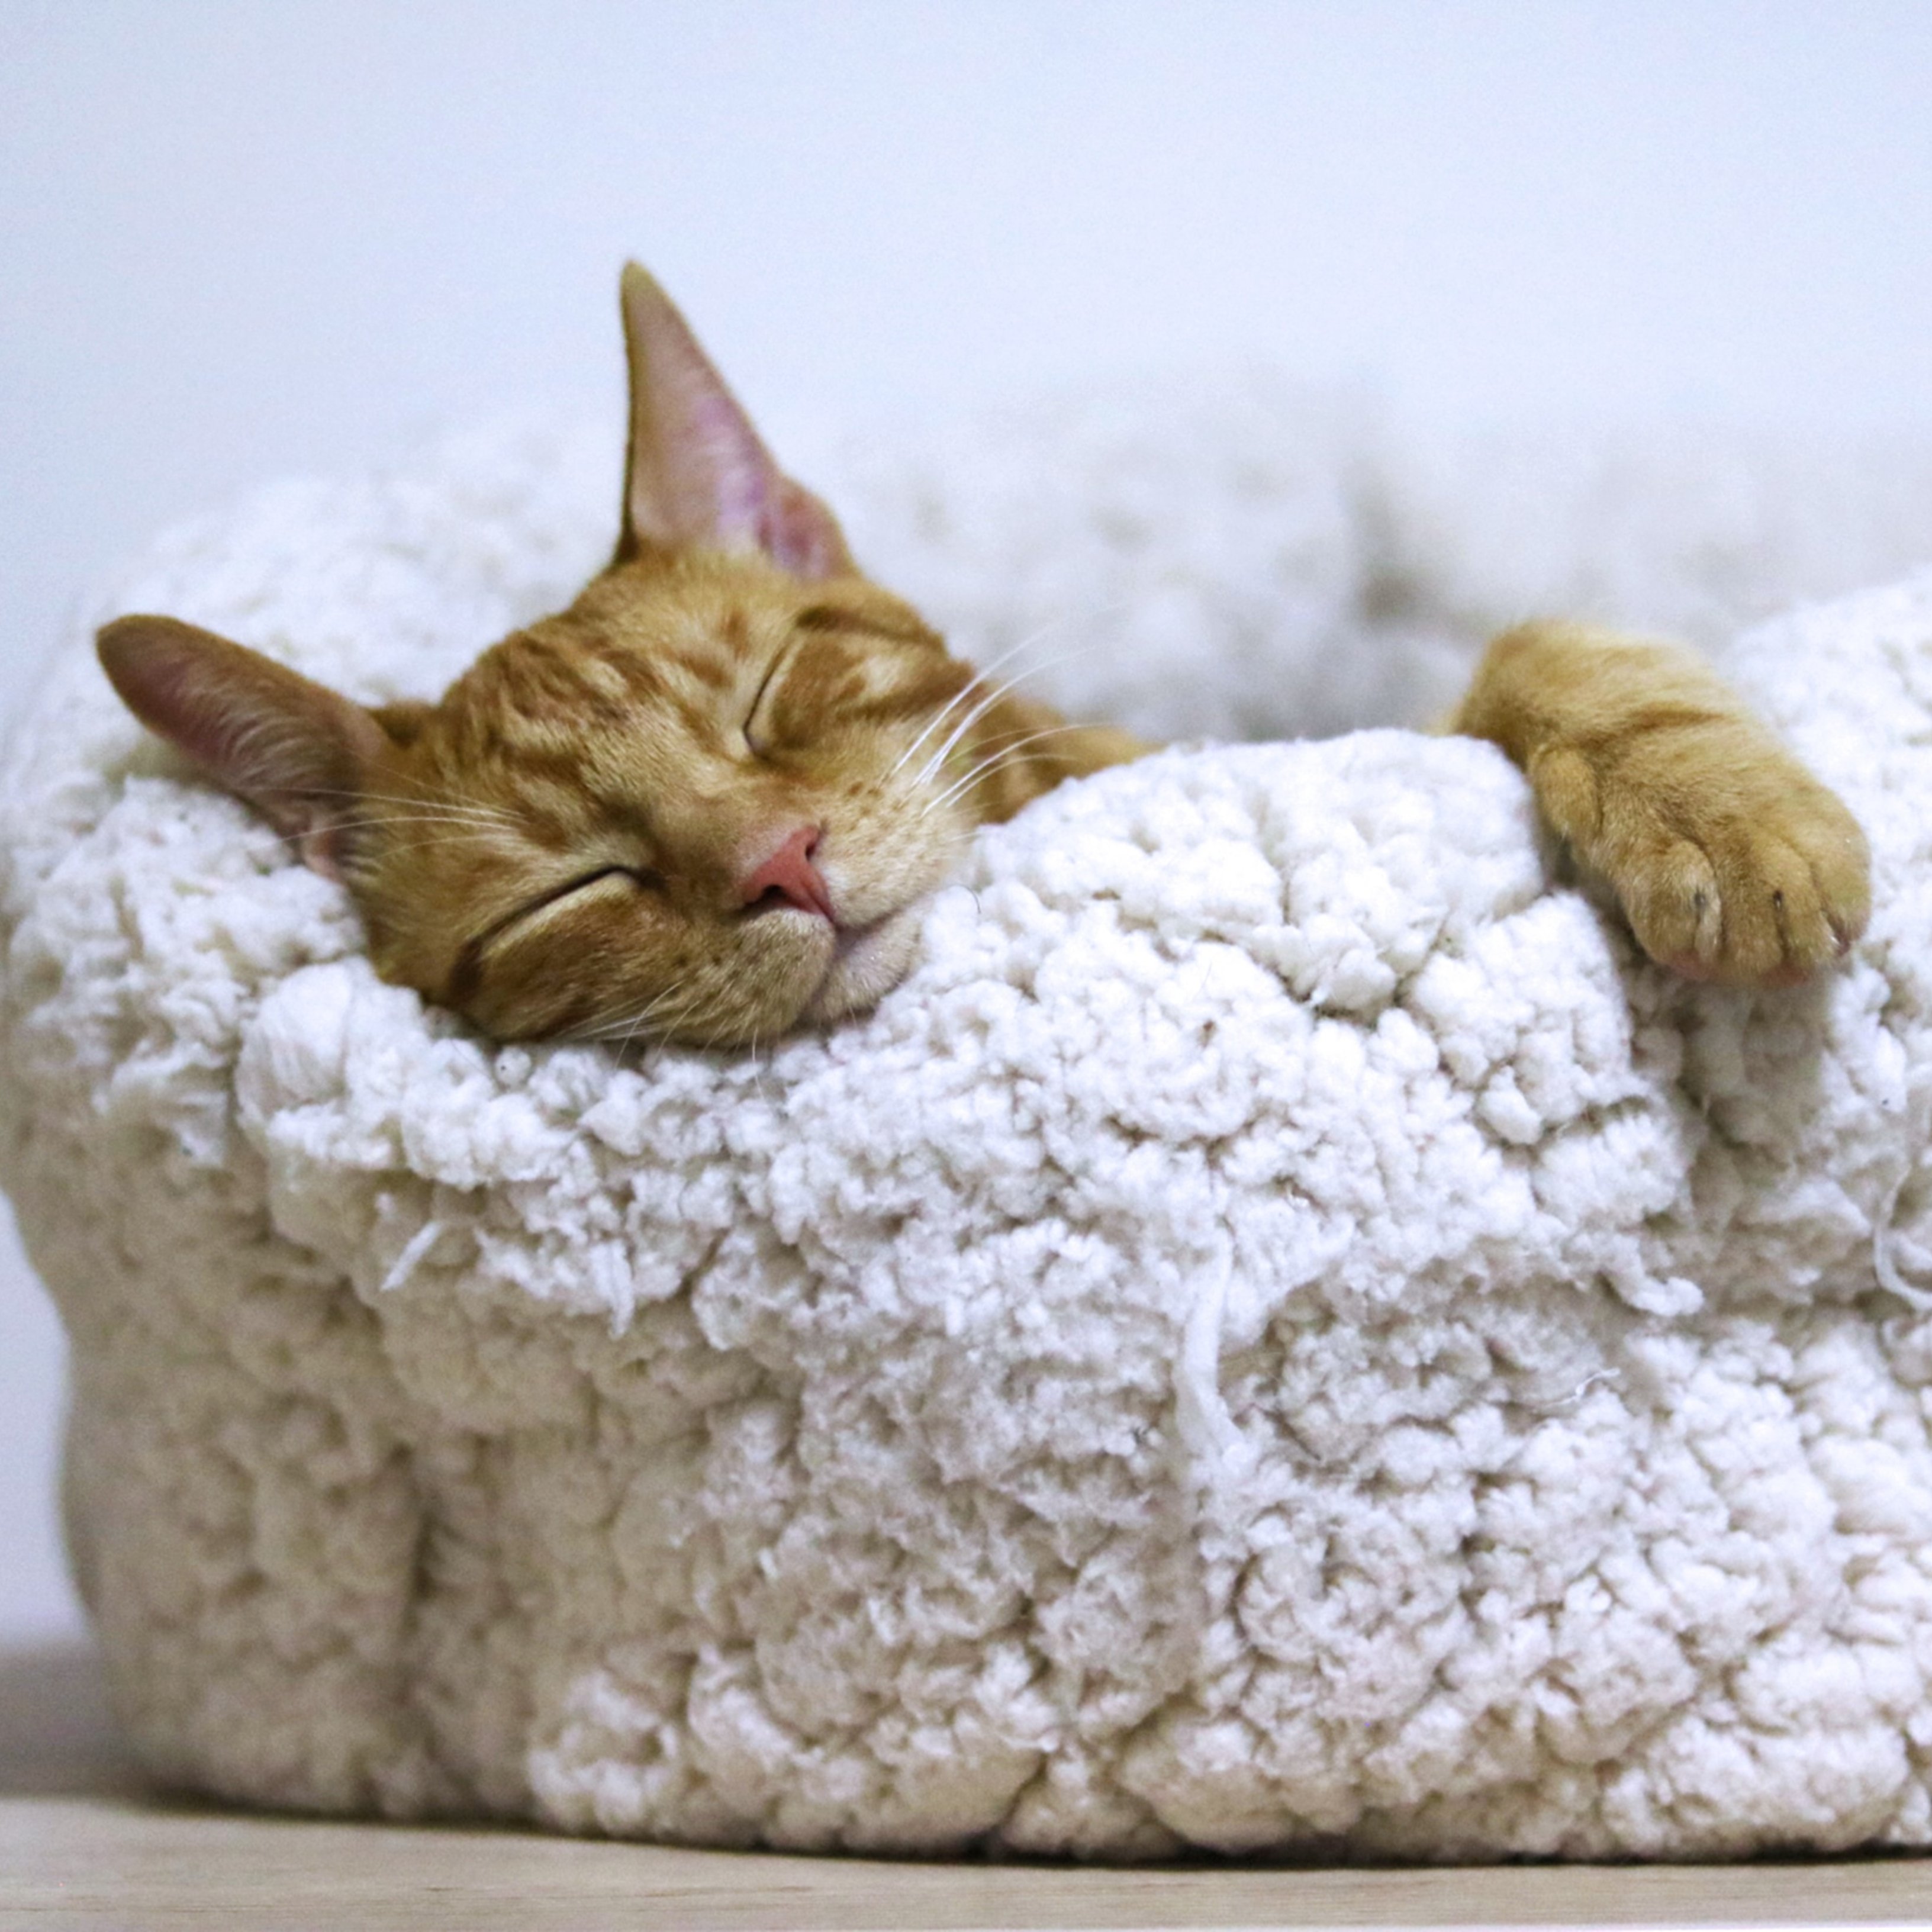 Estàs preocupat perquè el teu gat dorm molt durant el dia?